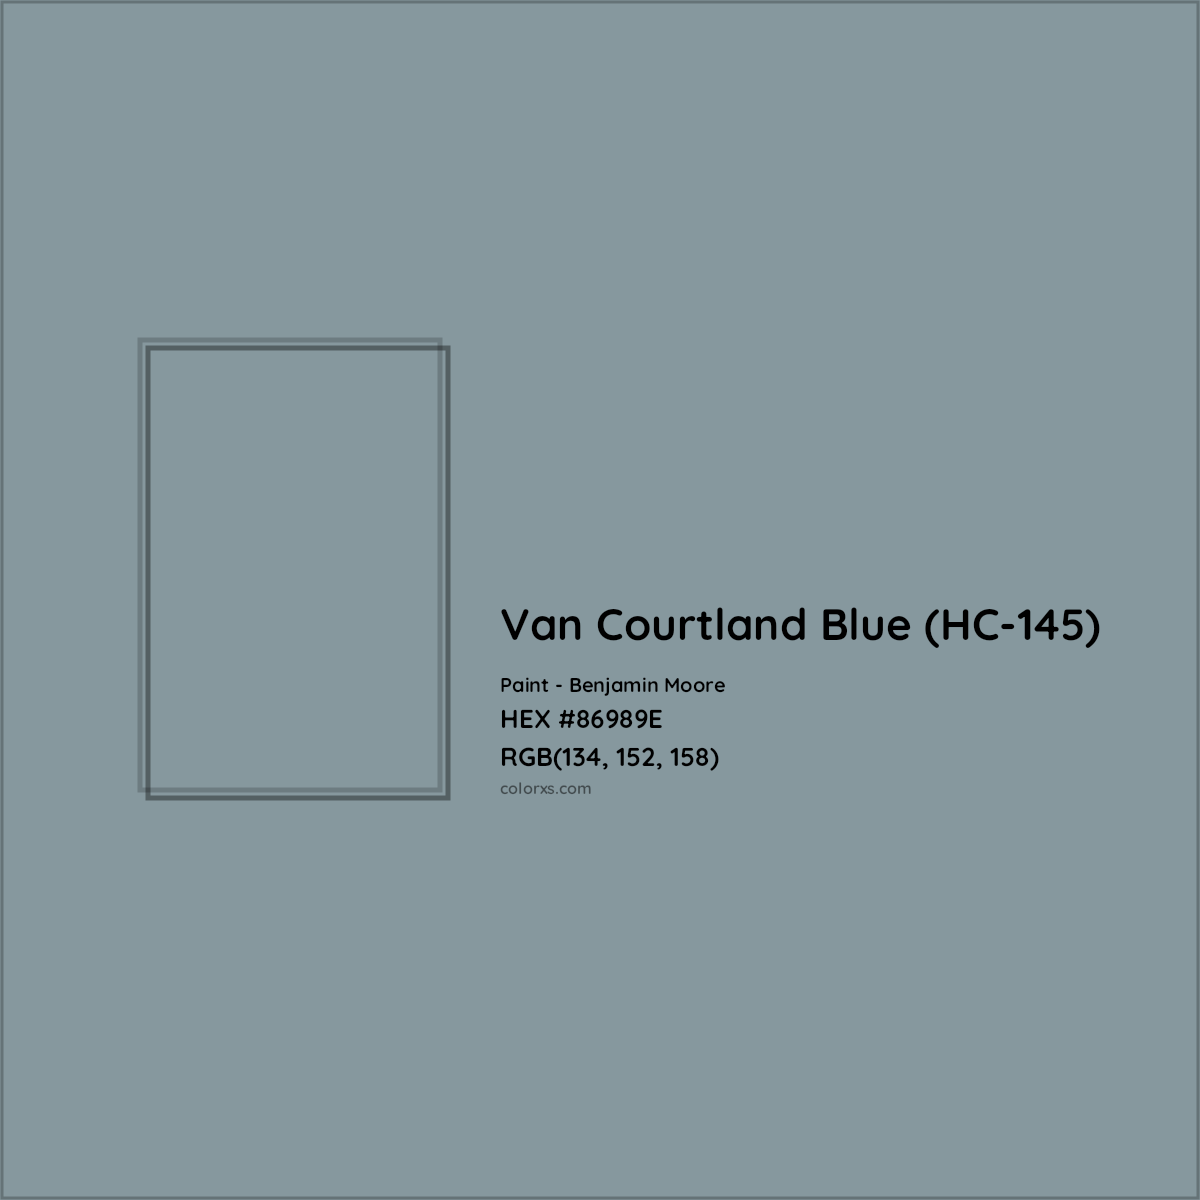 HEX #86989E Van Courtland Blue (HC-145) Paint Benjamin Moore - Color Code